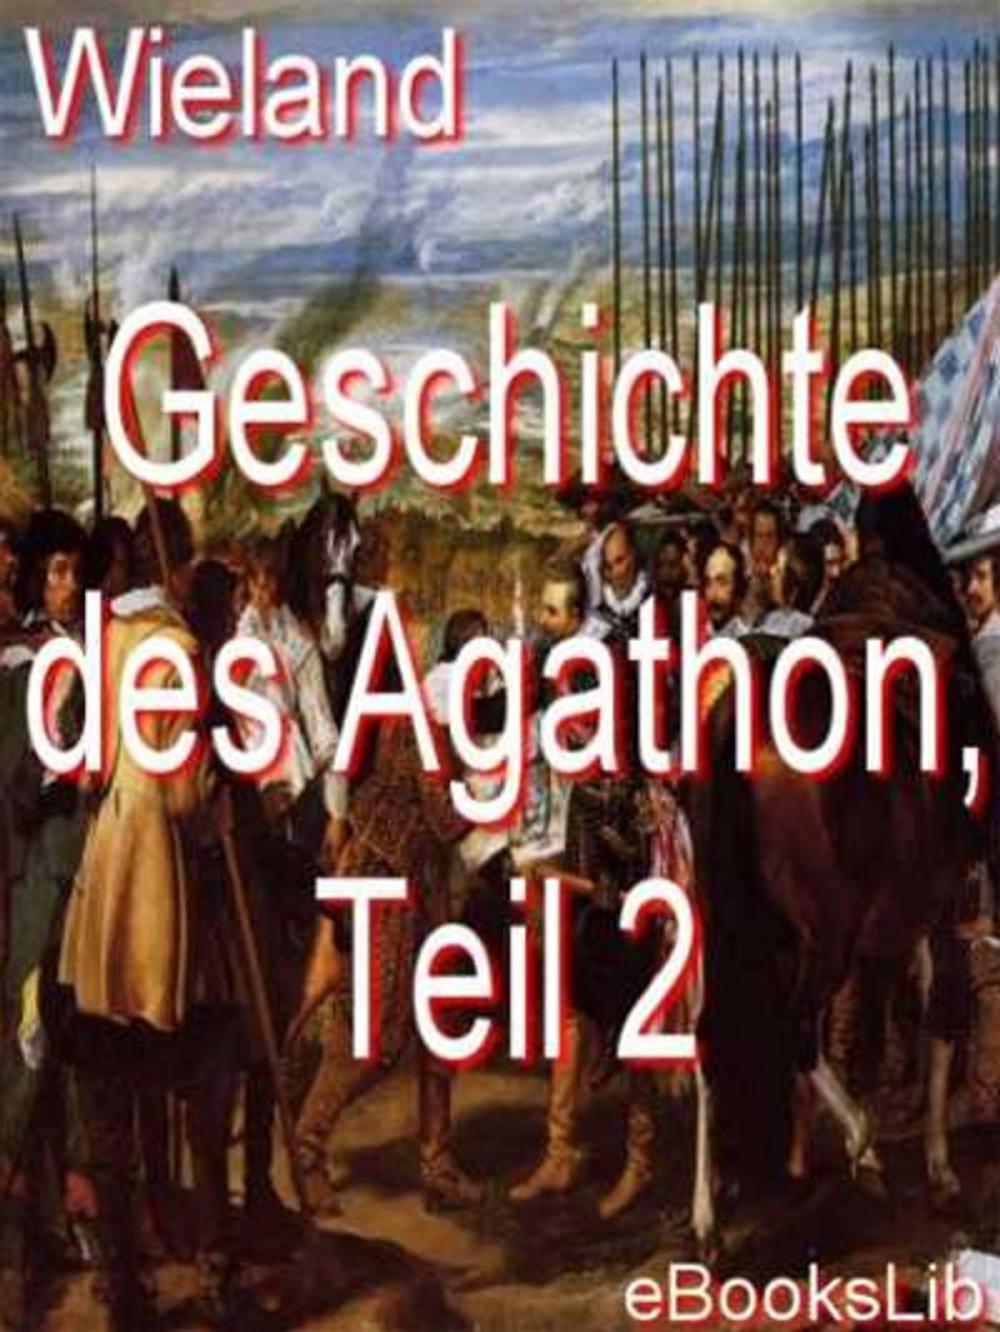 Big bigCover of Geschichte des Agathon, Teil 2